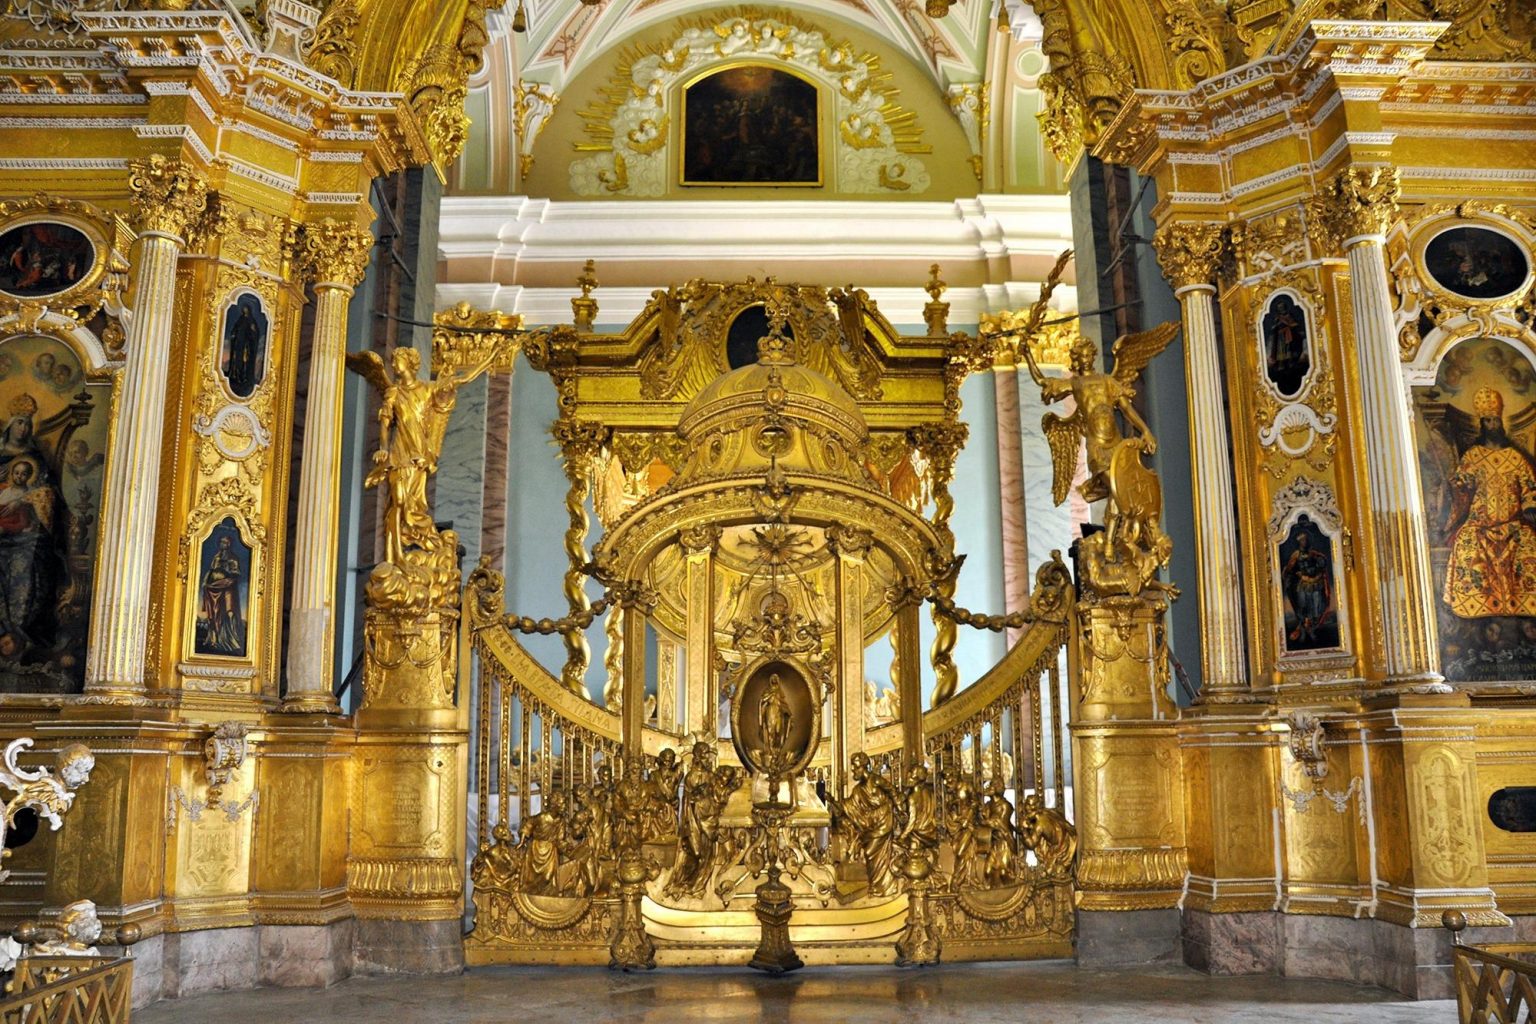 Петропавловский собор описание архитектуры